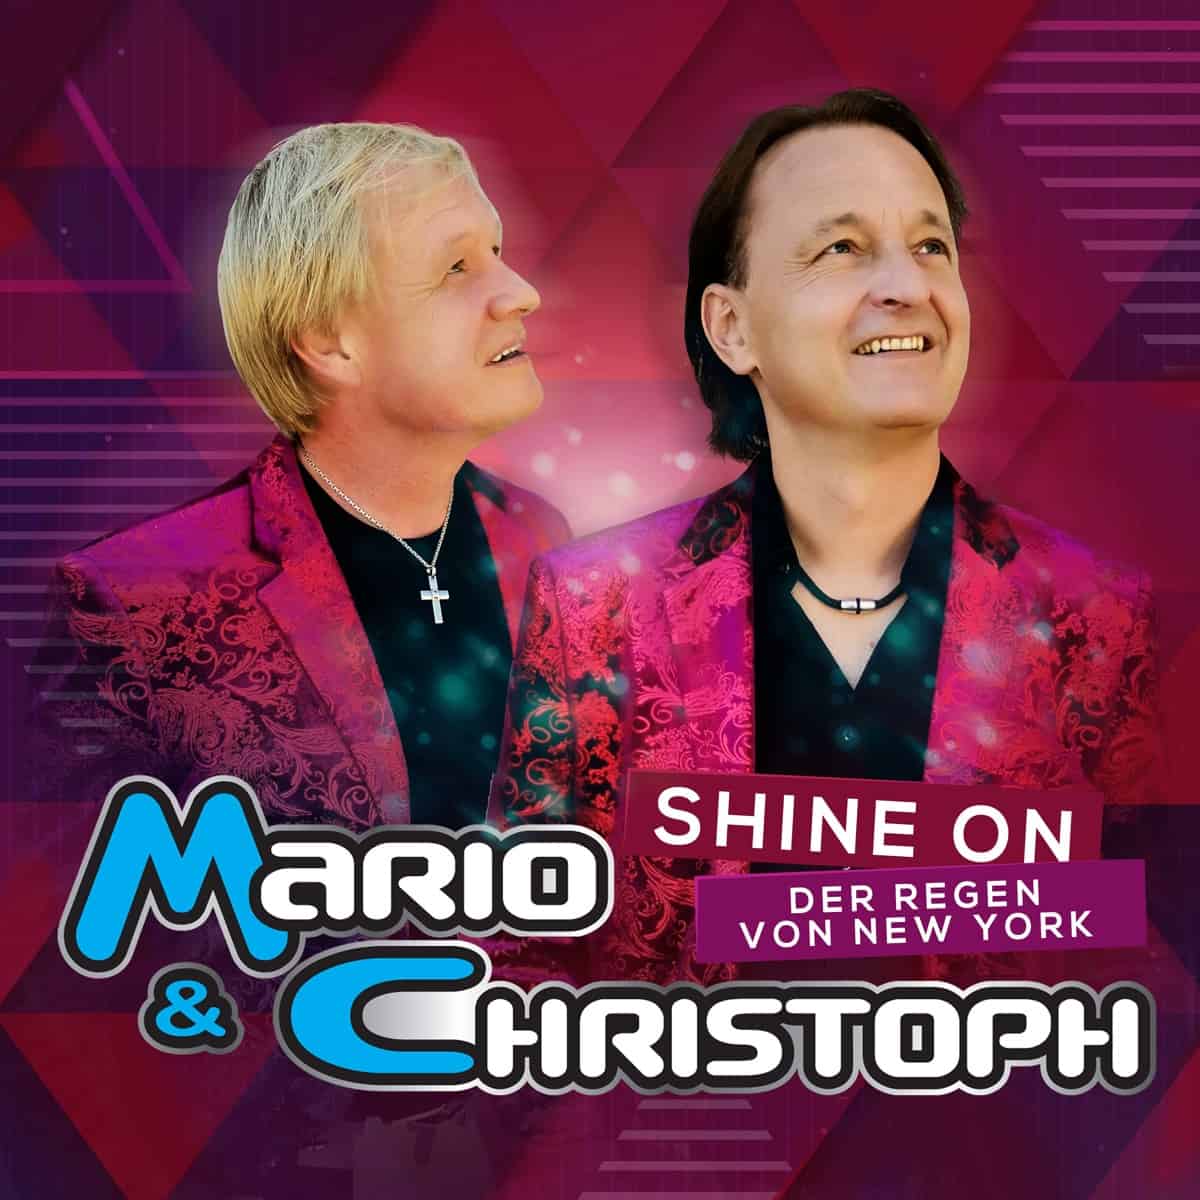 Mario & Christoph - Shine On (Der Regen von New York) (2020)